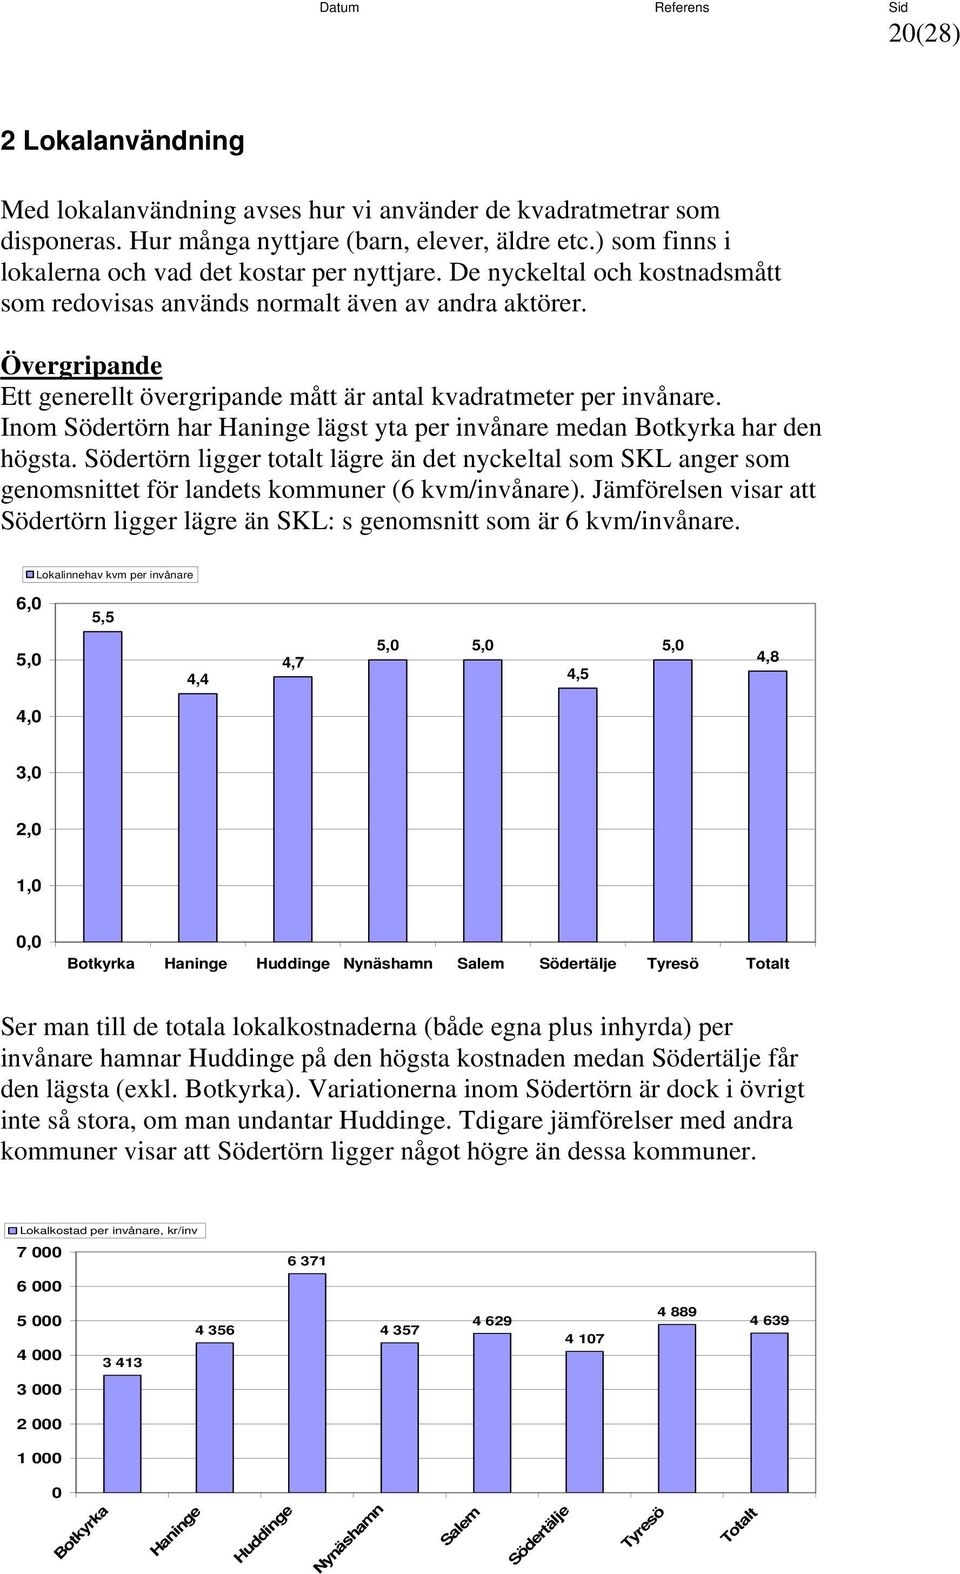 Inom Södertörn har lägst yta per invånare medan har den högsta. Södertörn ligger totalt lägre än det nyckeltal som SKL anger som genomsnittet för landets kommuner (6 kvm/invånare).